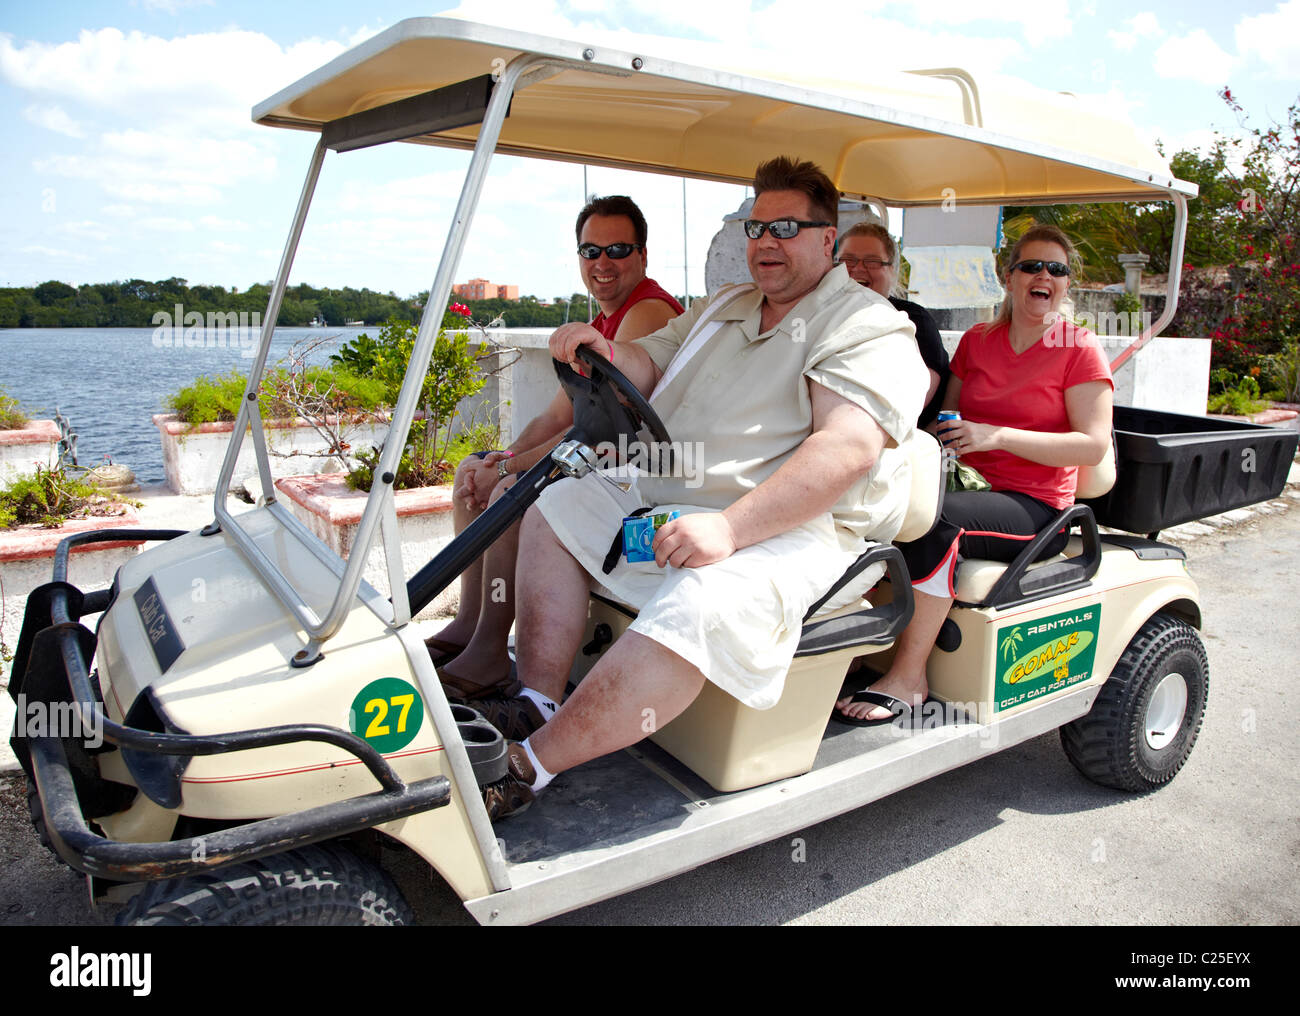 Fat Guy Golf Cart